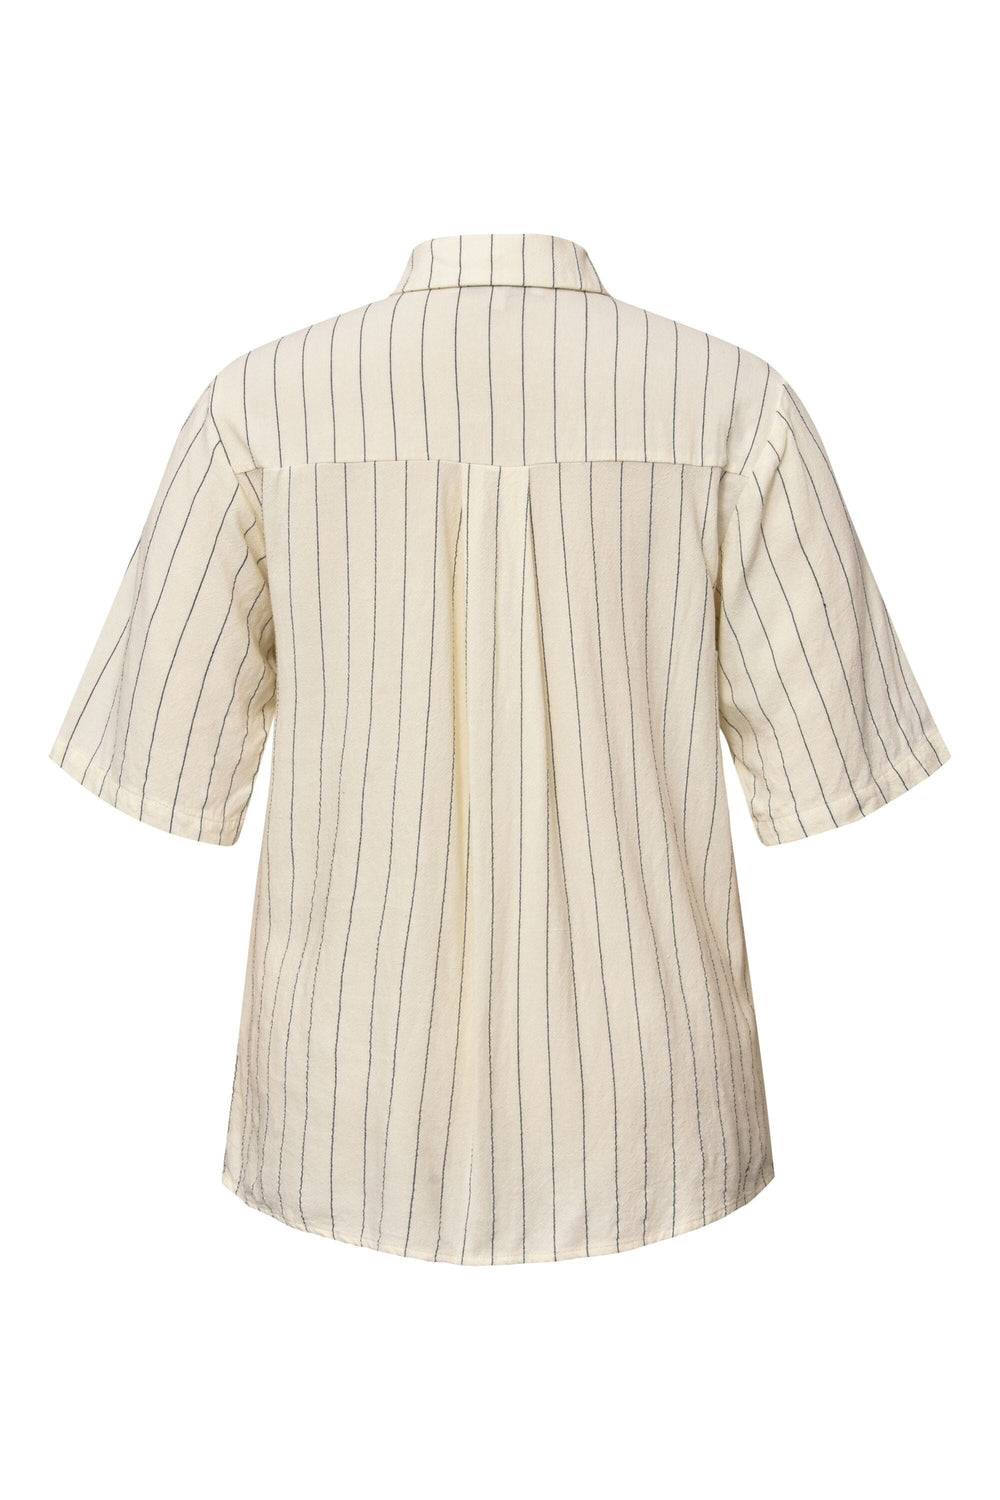 A-View - Lerke Stripe Shirt - 005 Off White Skjorter 